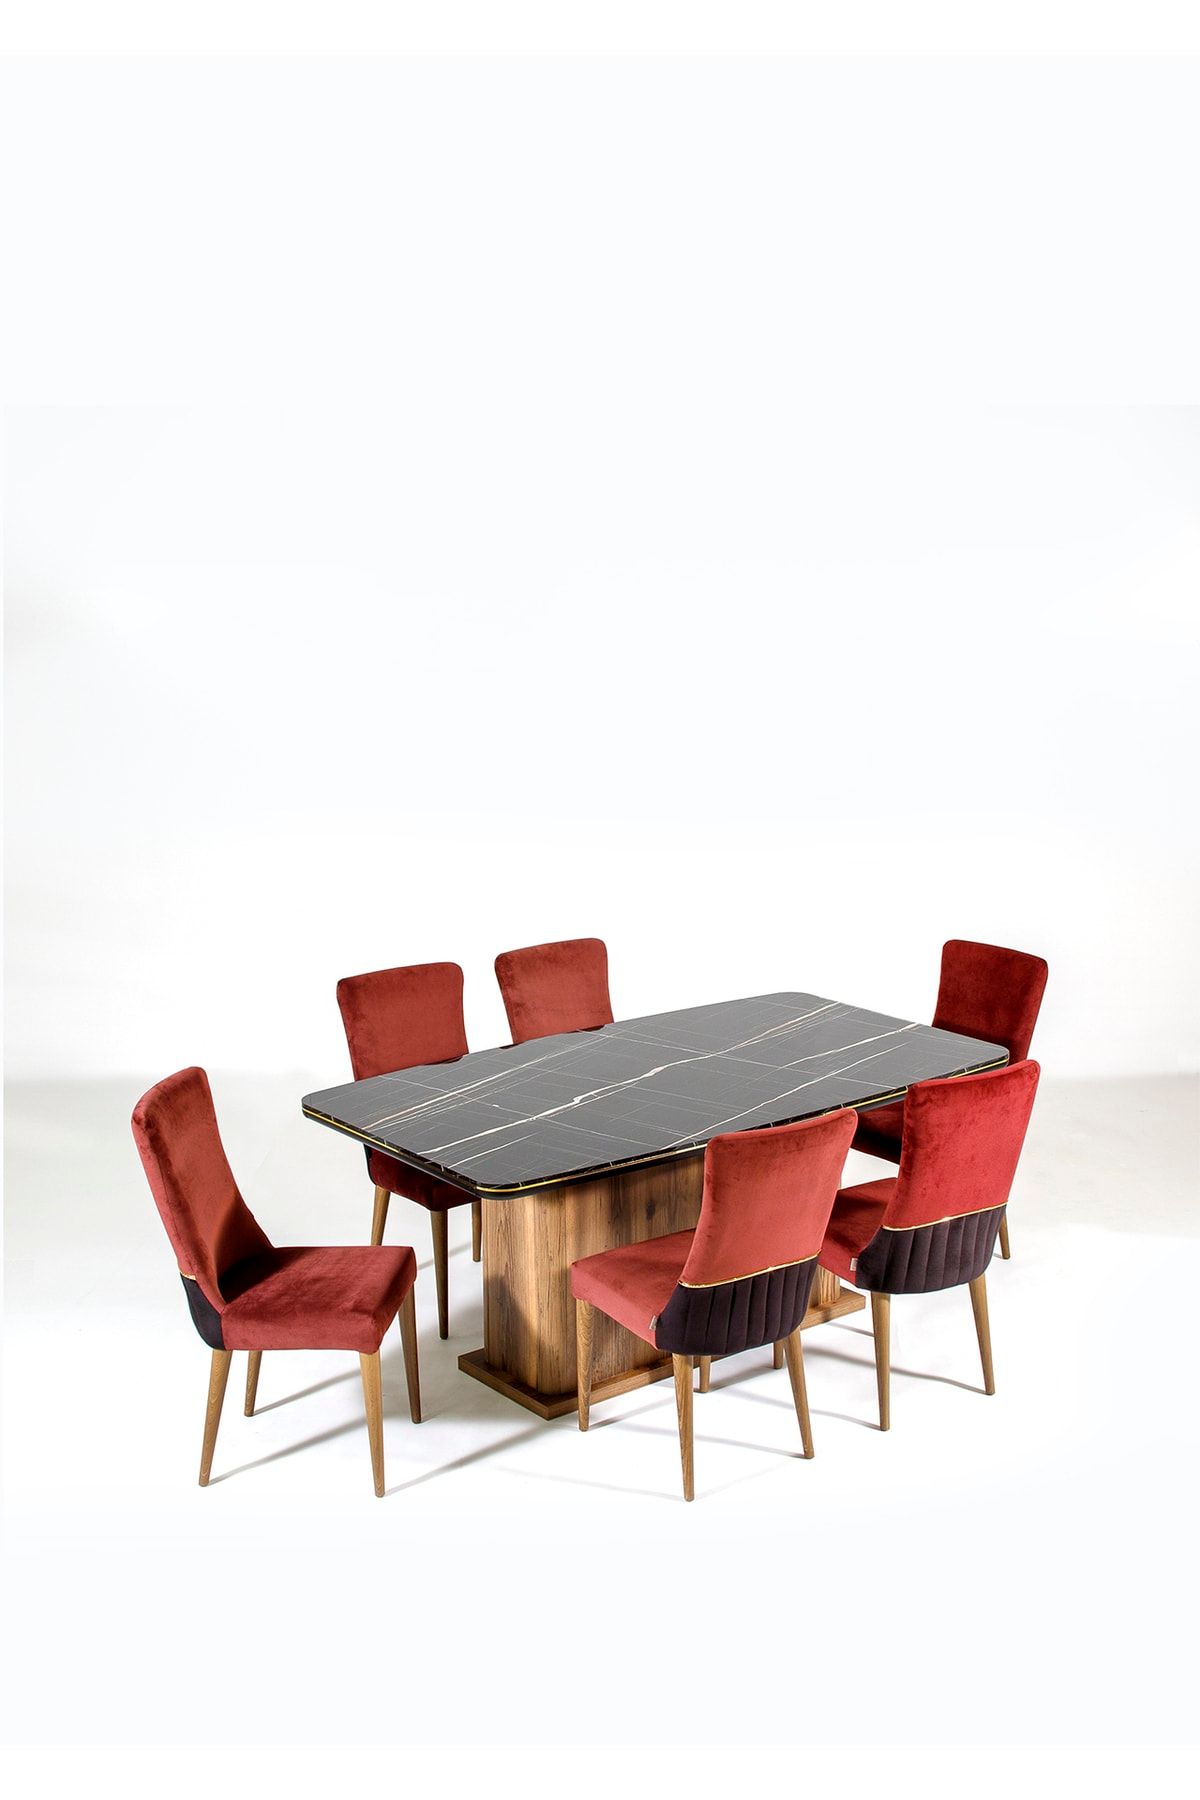 Modalife Demre 6 Sandalye 1 Sabit Masa Yemek Masası Takımı 6 Kişilik - Ceviz